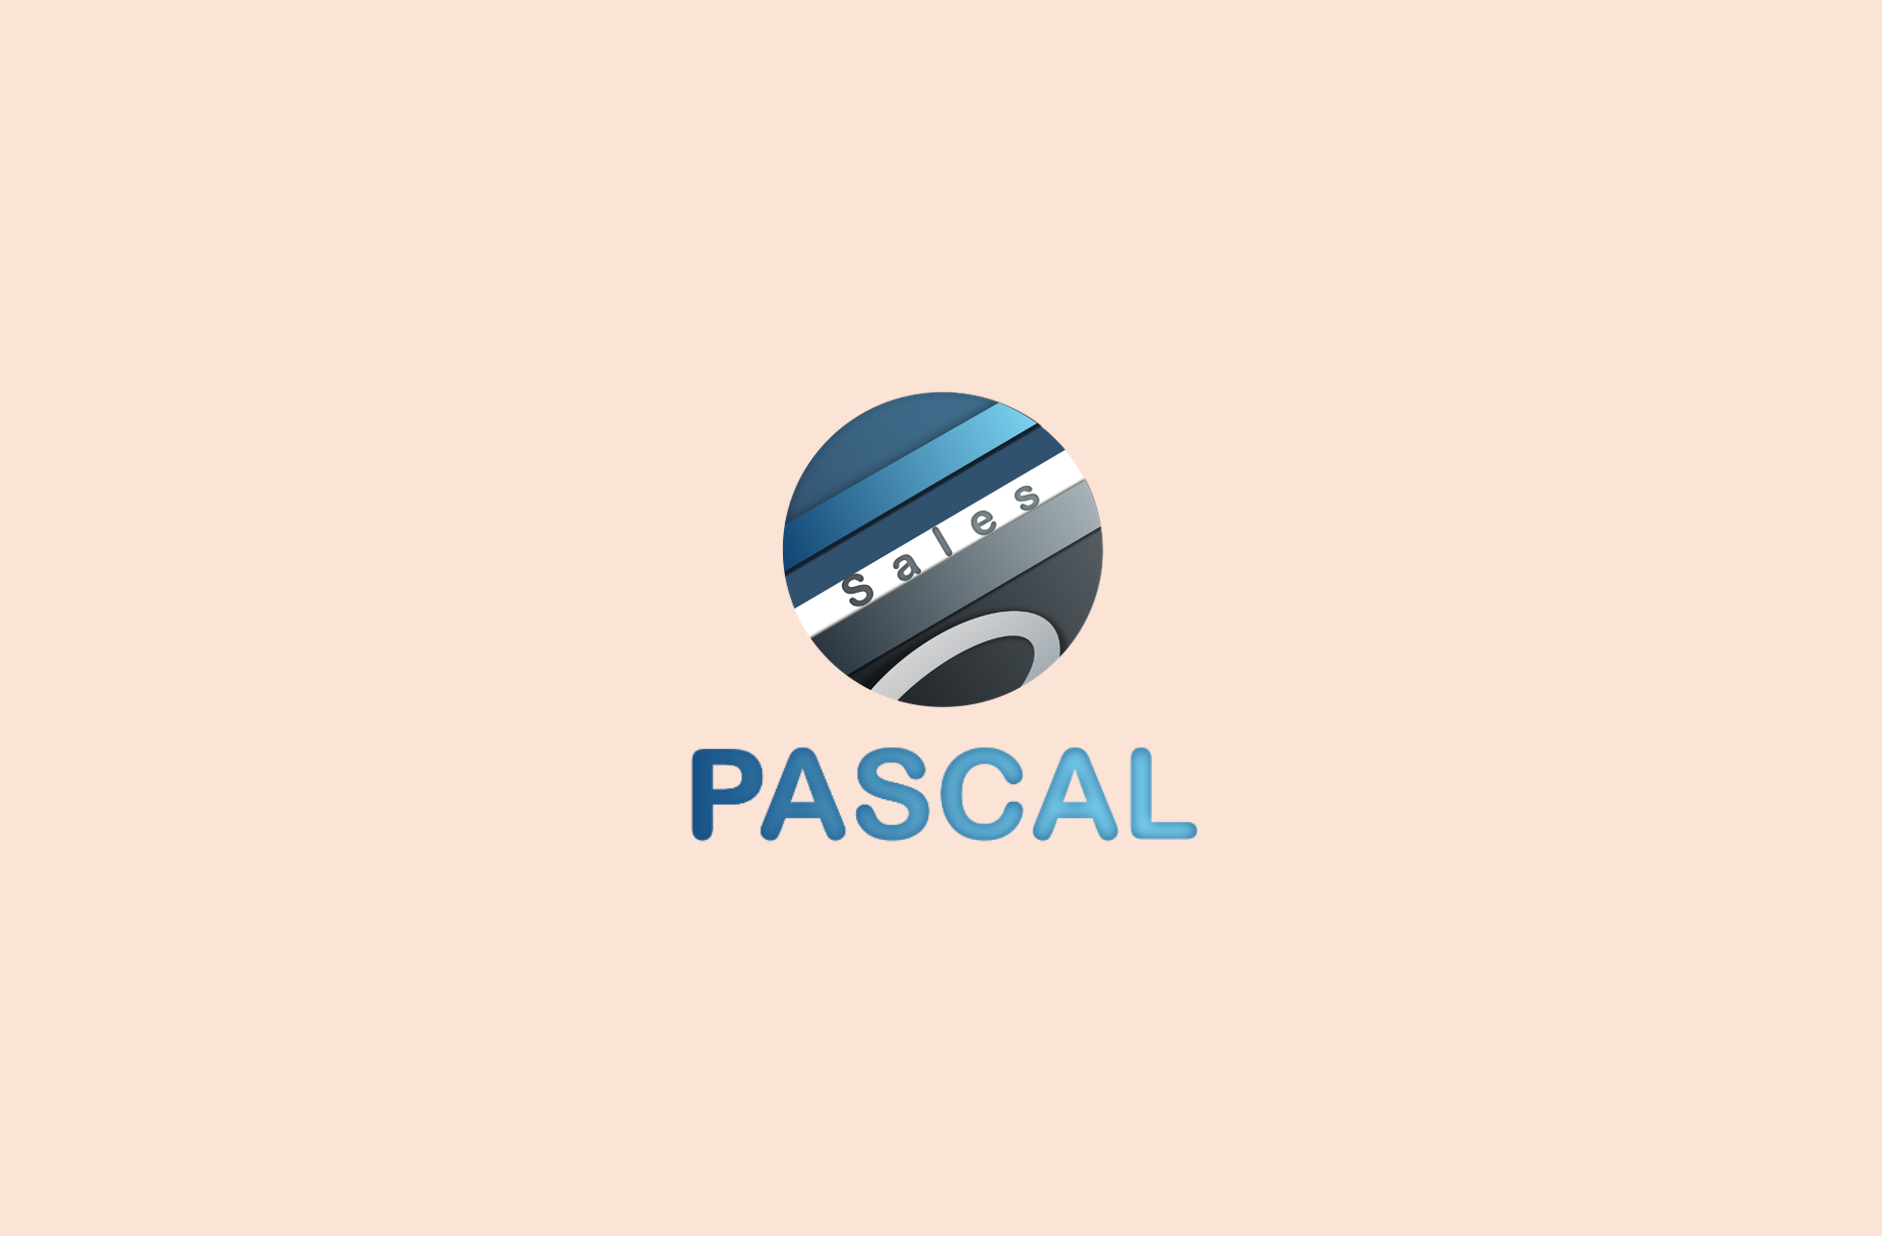 顧客管理システム「PASCAL」の提供を開始しました